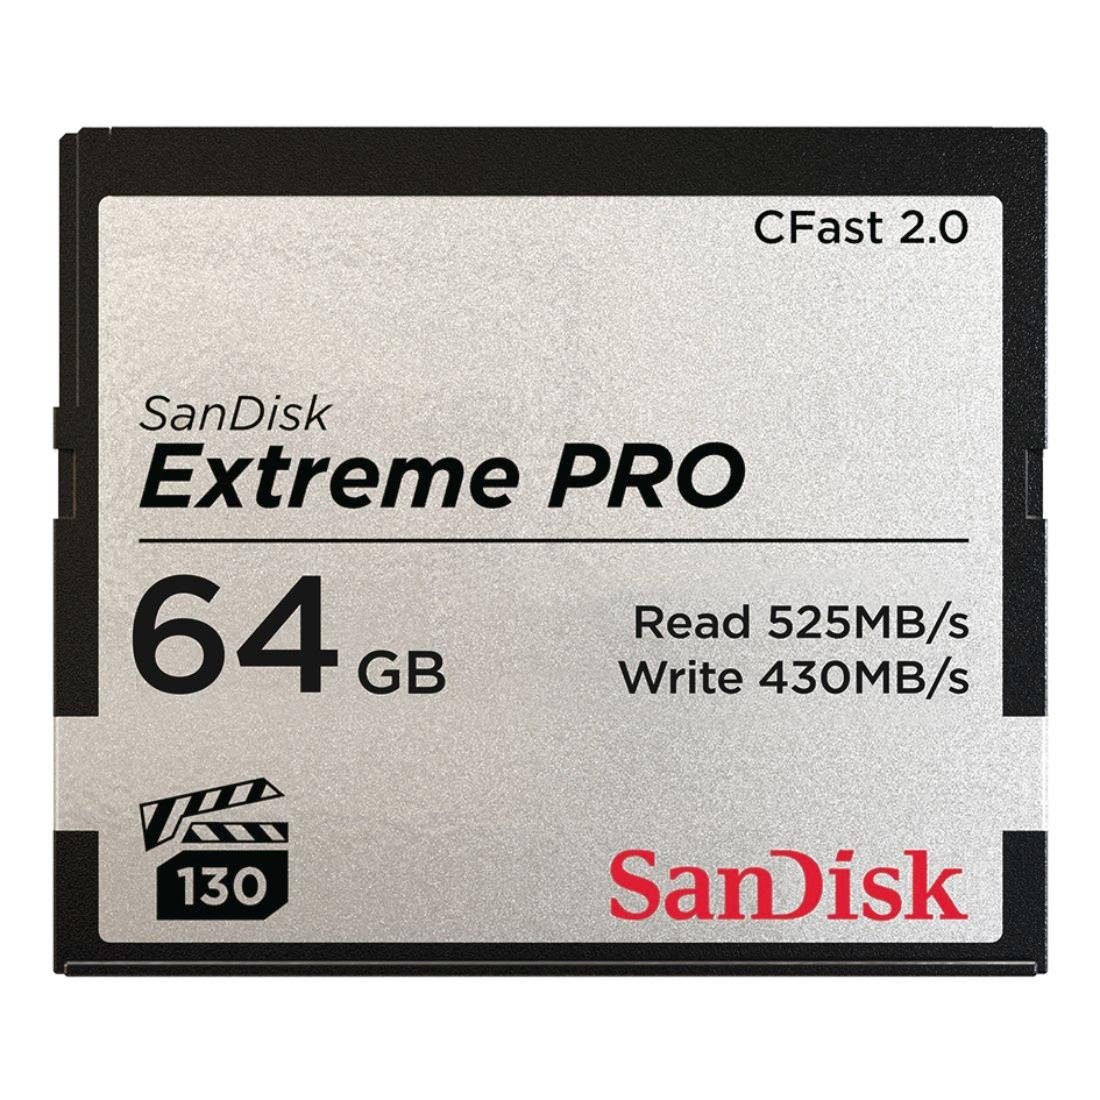 Sandisk CFast Extreme Pro 2.0 Speicherkarte (64 GB, 525 MB/s Lesegeschwindigkeit)